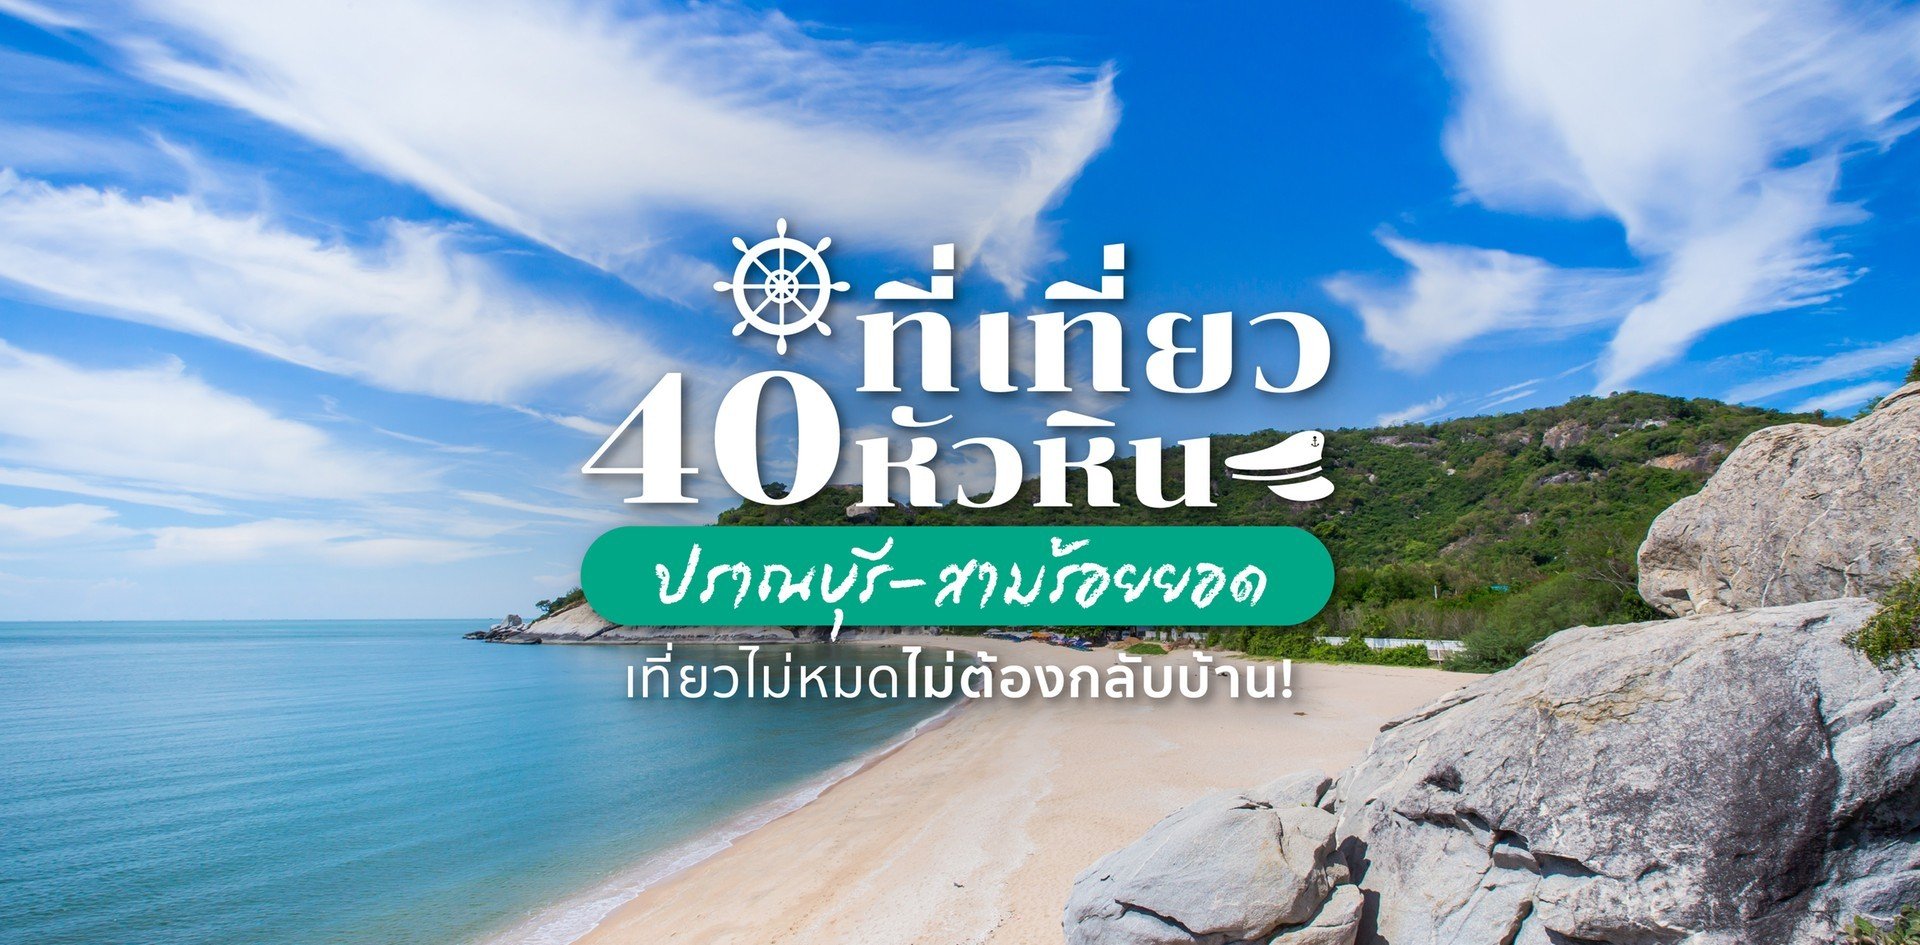 40 ที่เที่ยวหัวหิน-ปราณบุรี-สามร้อยยอด ต้องตามเก็บให้ครบในปี 2022!